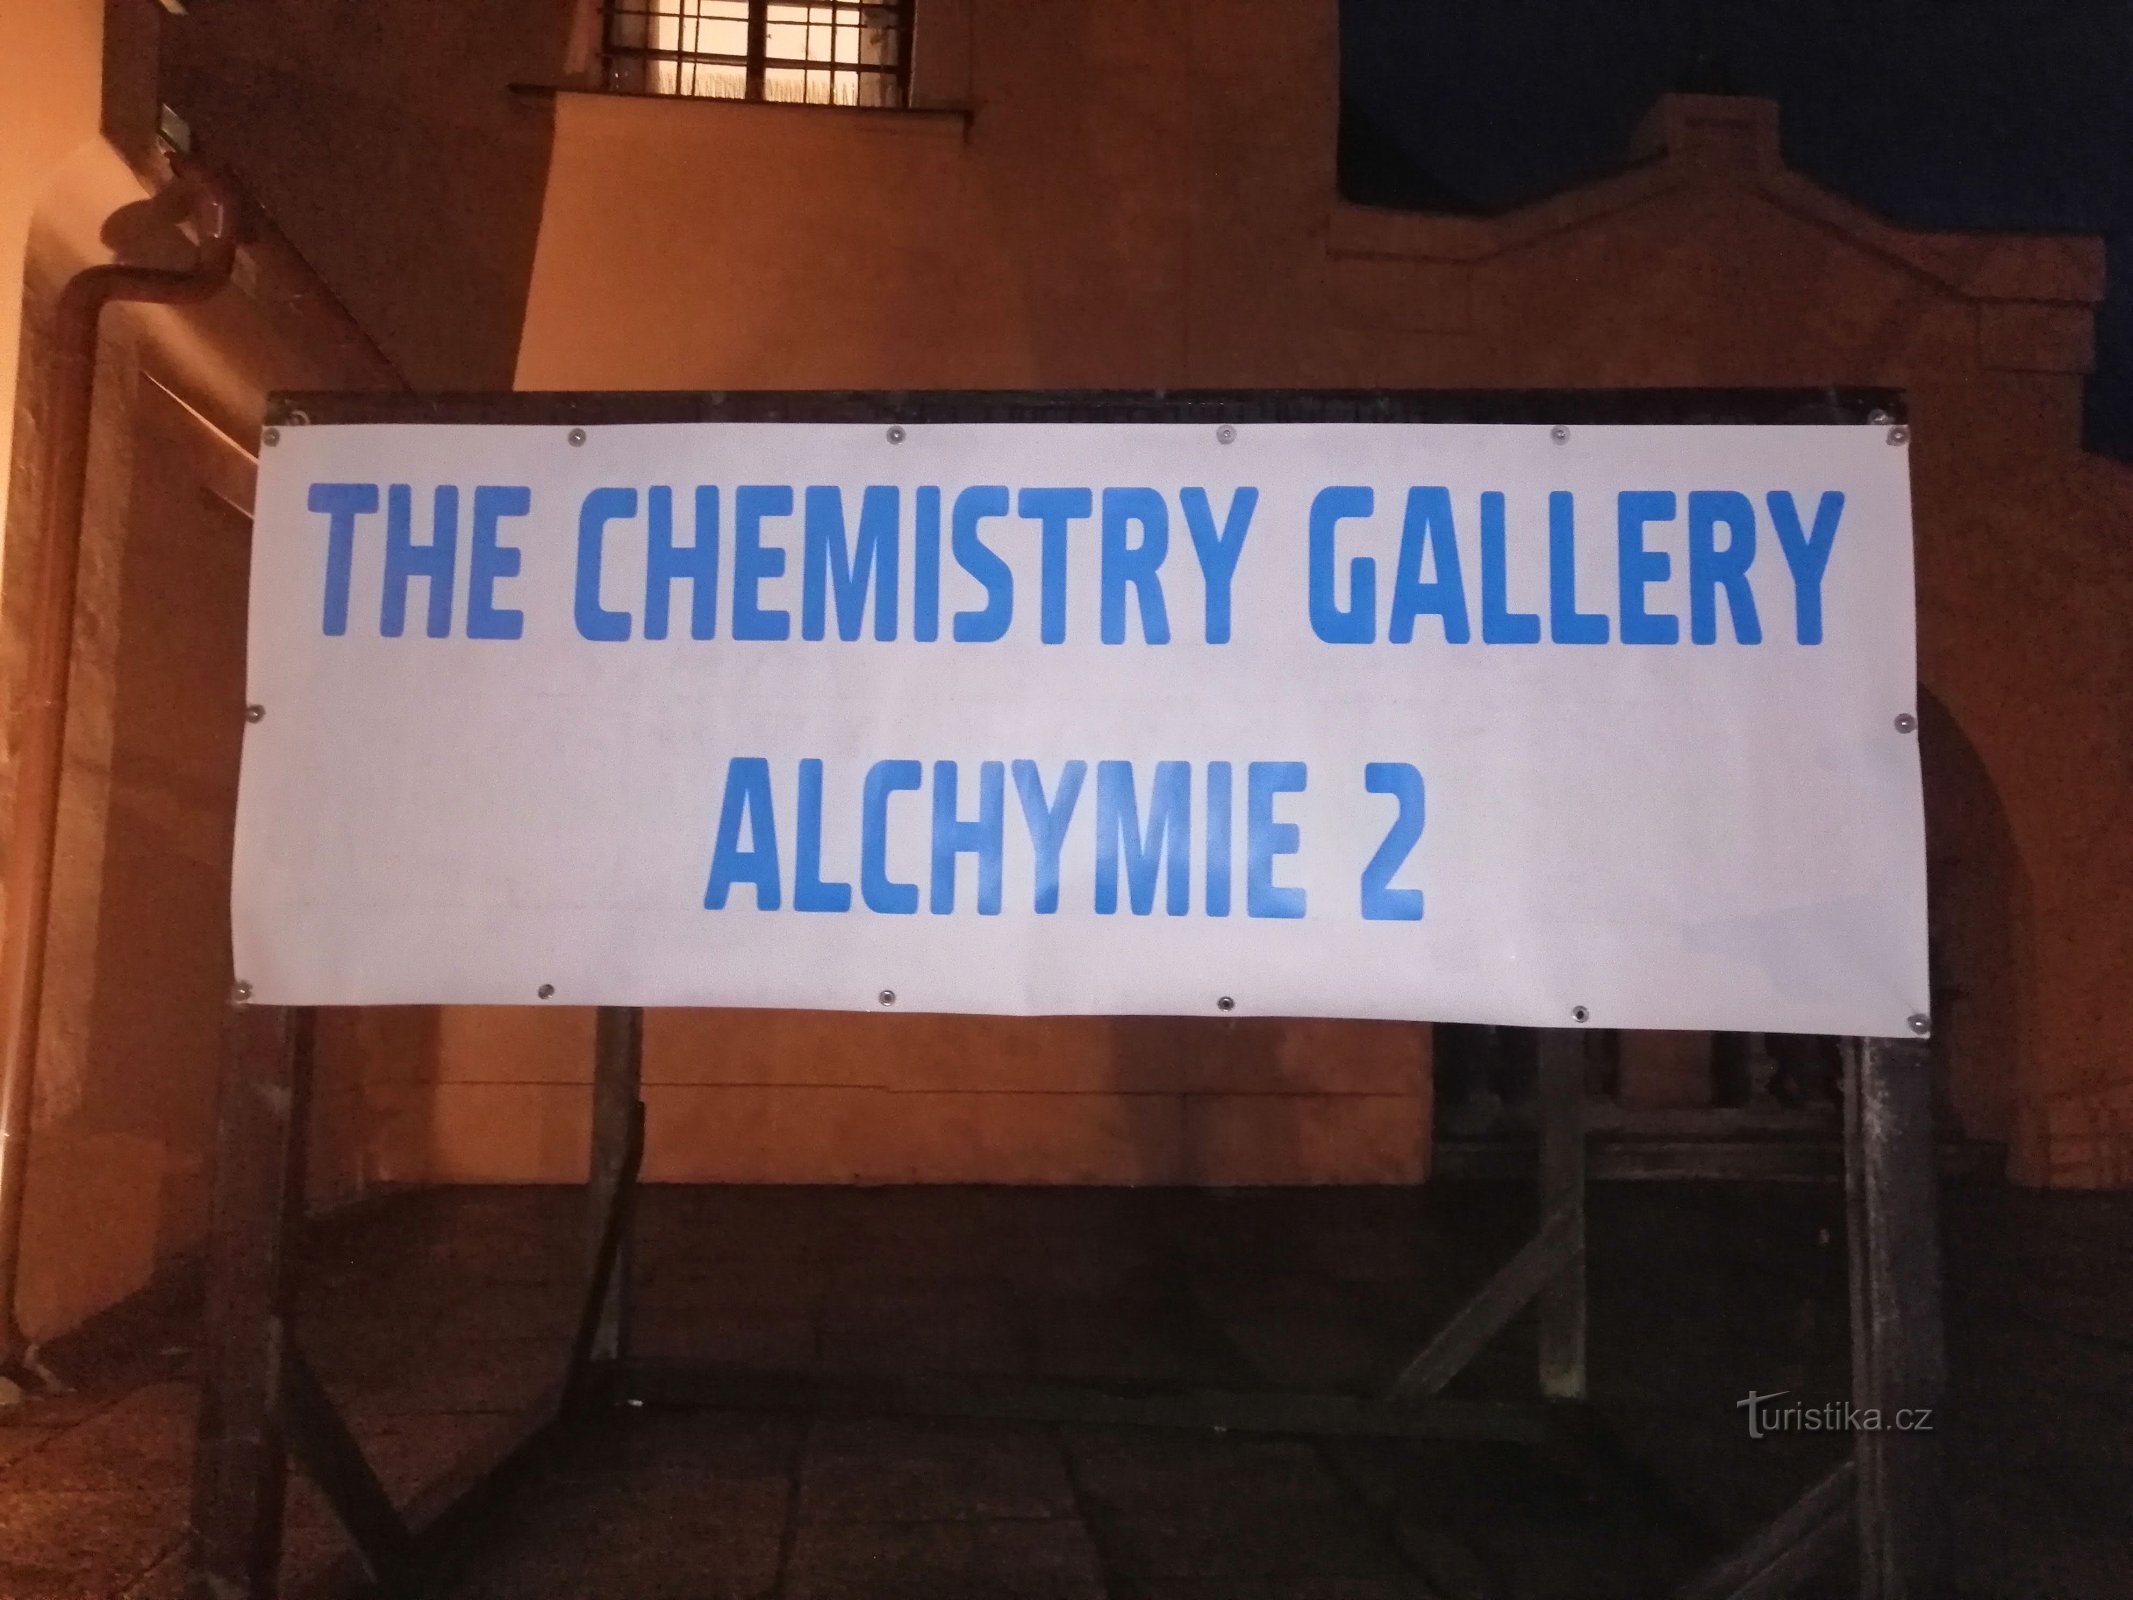 化学画廊展览 ALCHYMIE 2 - Sokolov